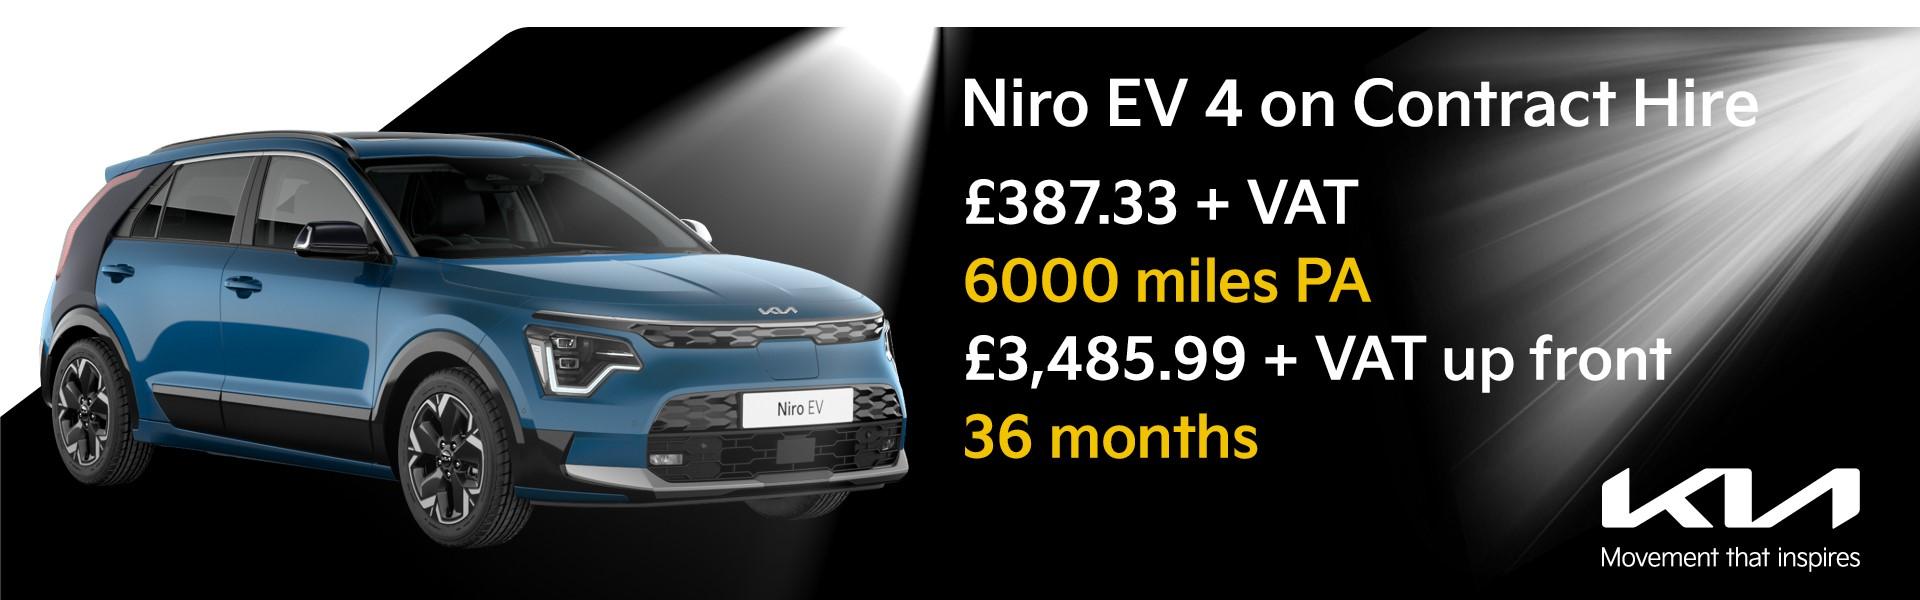 Niro EV 4 on Contract Hire: £387.33 + VAT, 6000 miles PA, £3,485.99 + VAT up front, 36 months